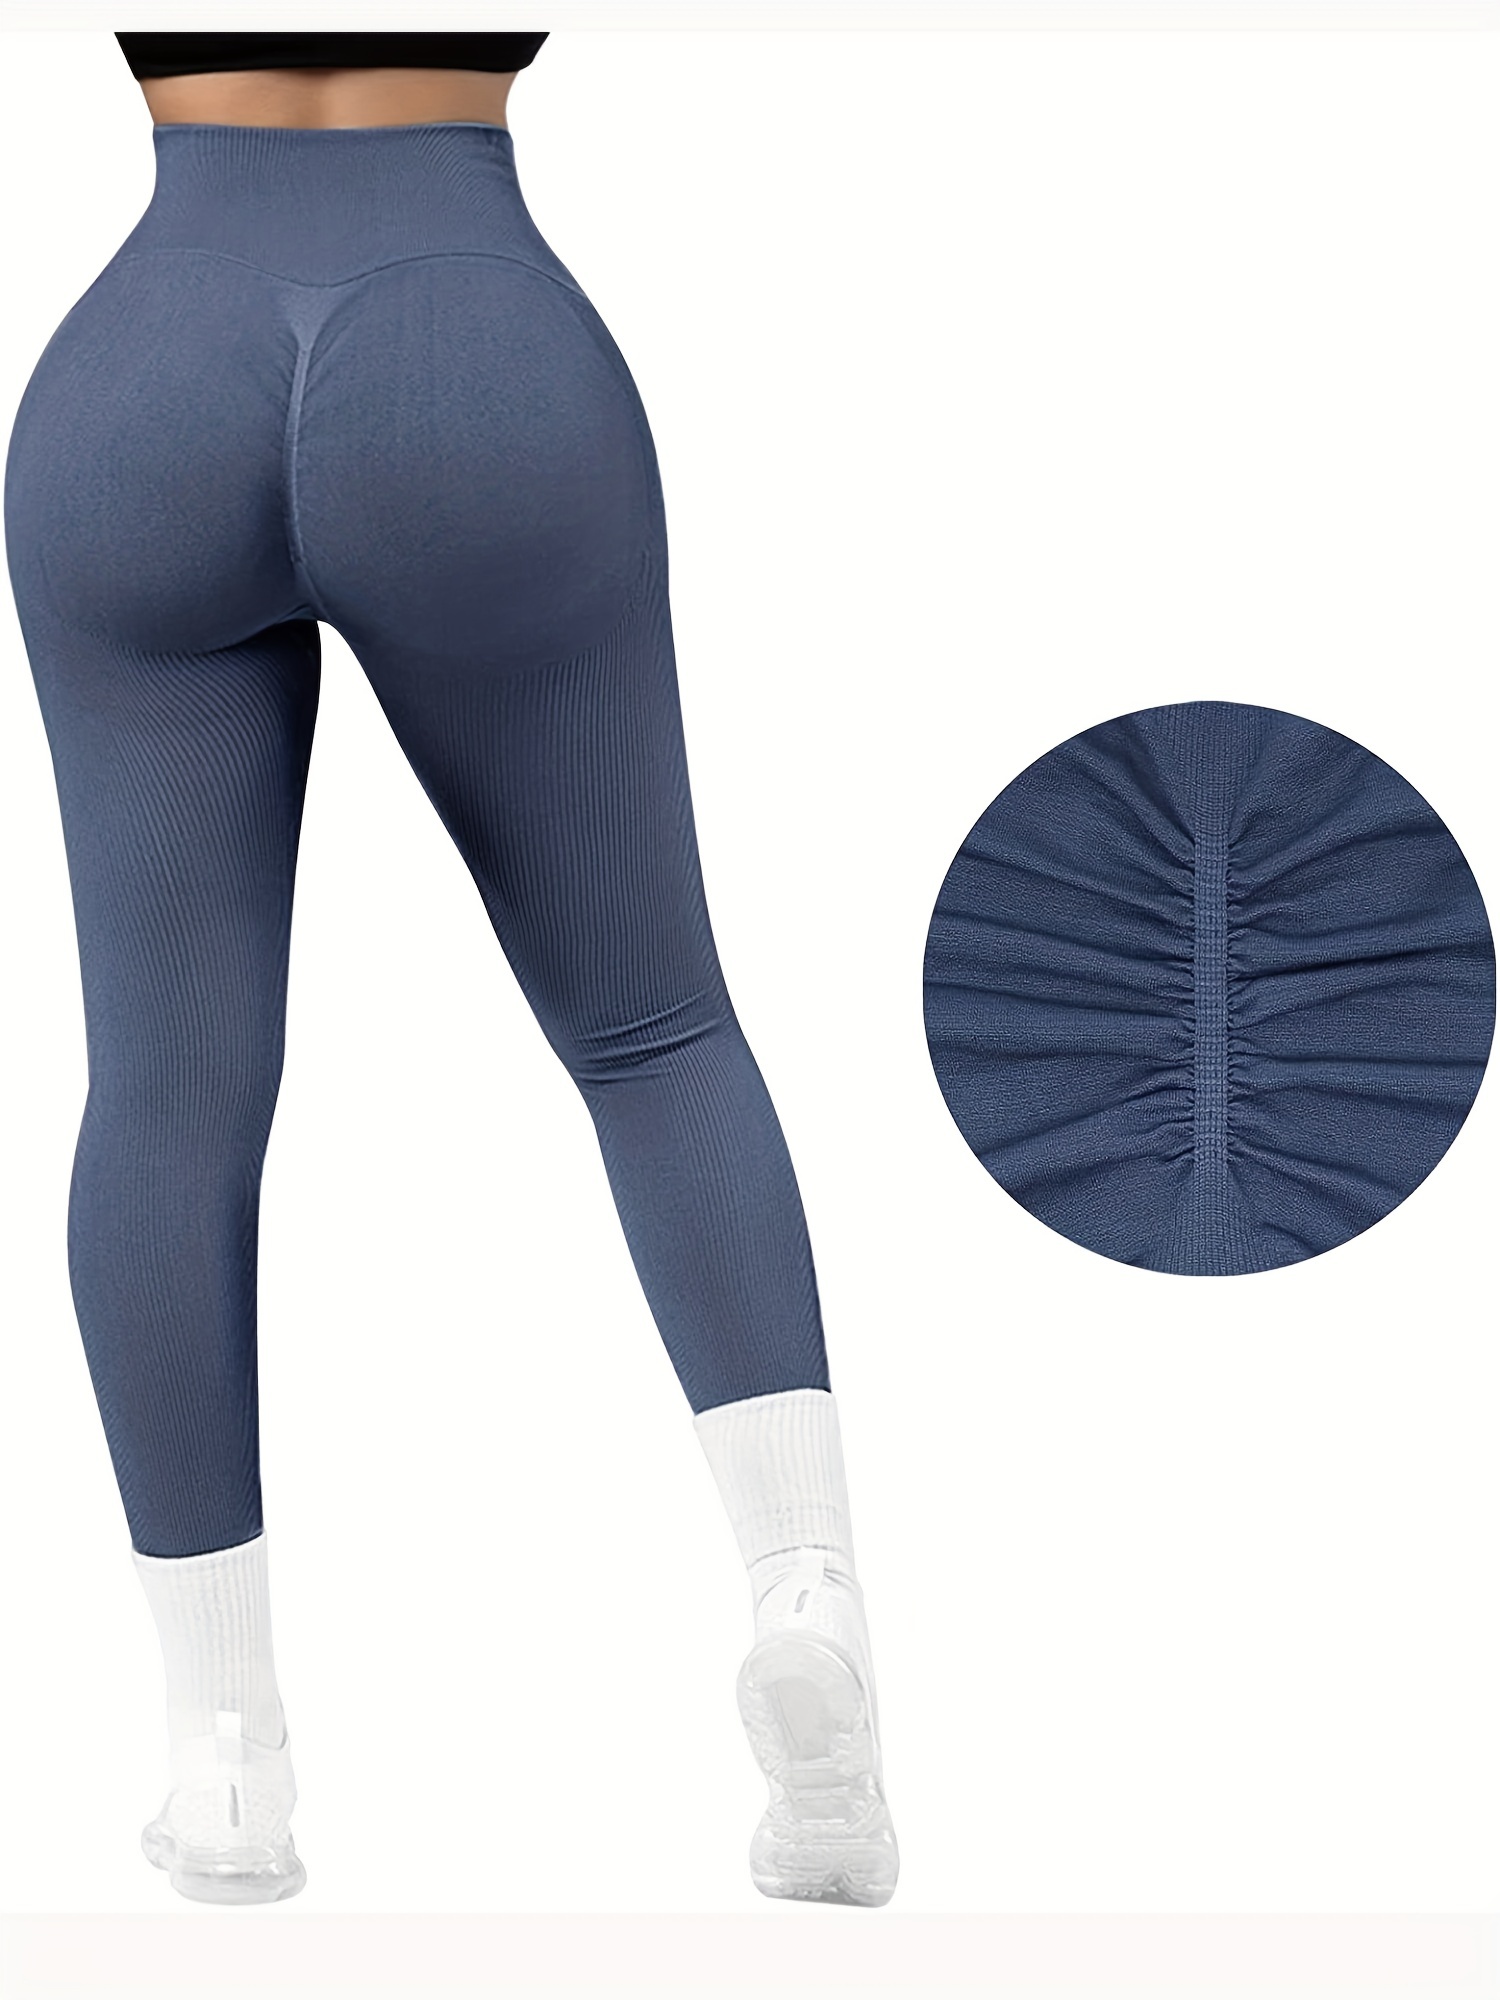 Cheap Rib Knit High Waisted Leggings for Women - Tossy Soft Women's Leggings  Seamless Gym Leggings Sports Yoga Pants